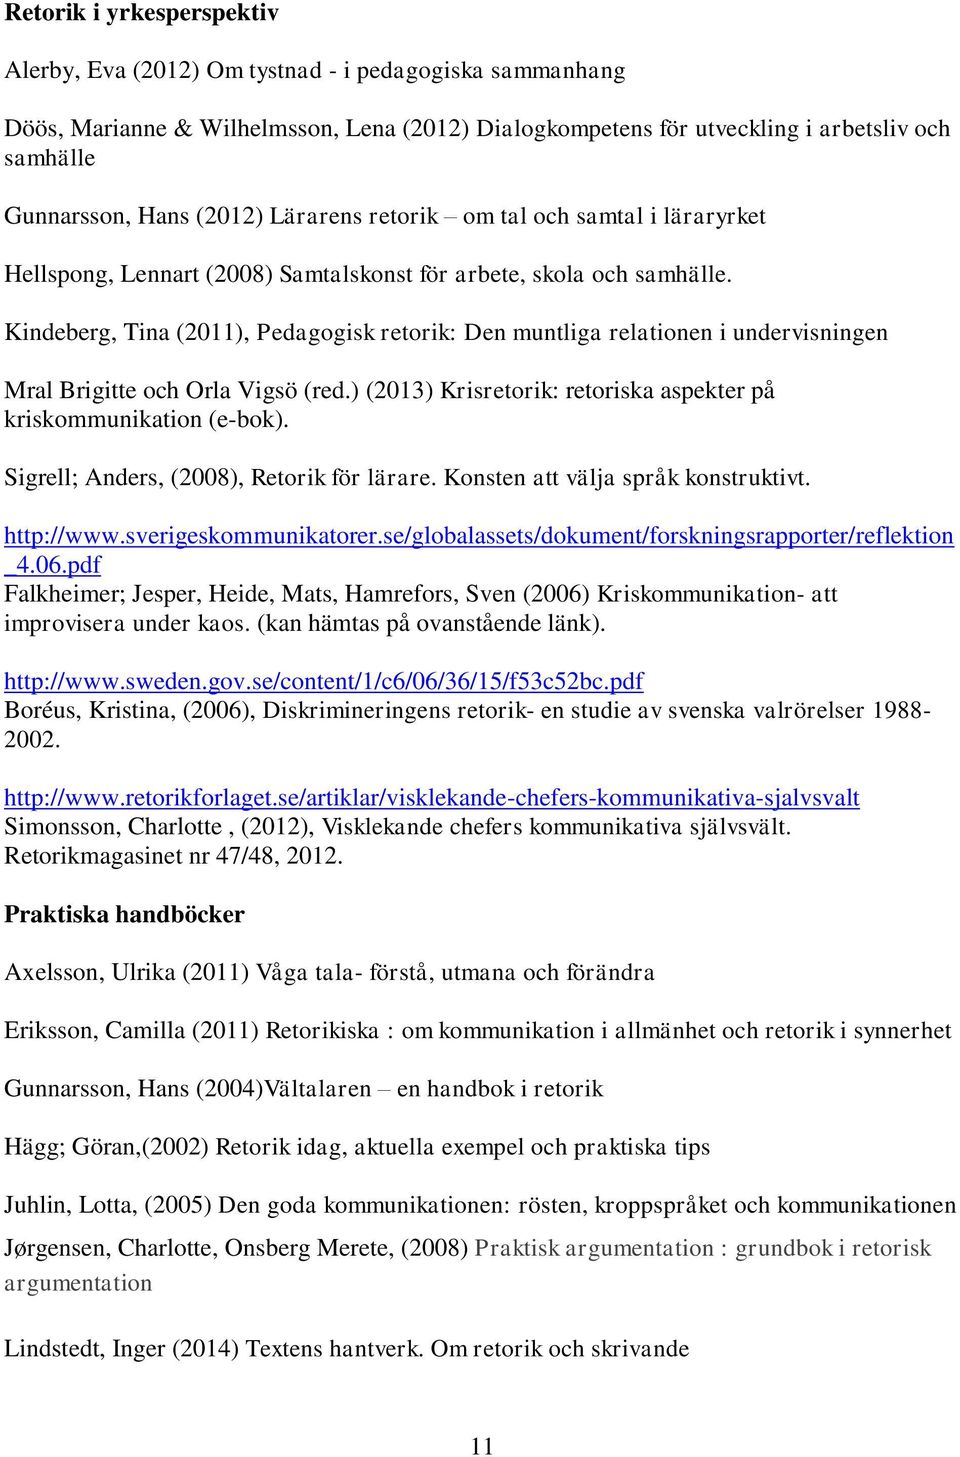 Kindeberg, Tina (2011), Pedagogisk retorik: Den muntliga relationen i undervisningen Mral Brigitte och Orla Vigsö (red.) (2013) Krisretorik: retoriska aspekter på kriskommunikation (e-bok).